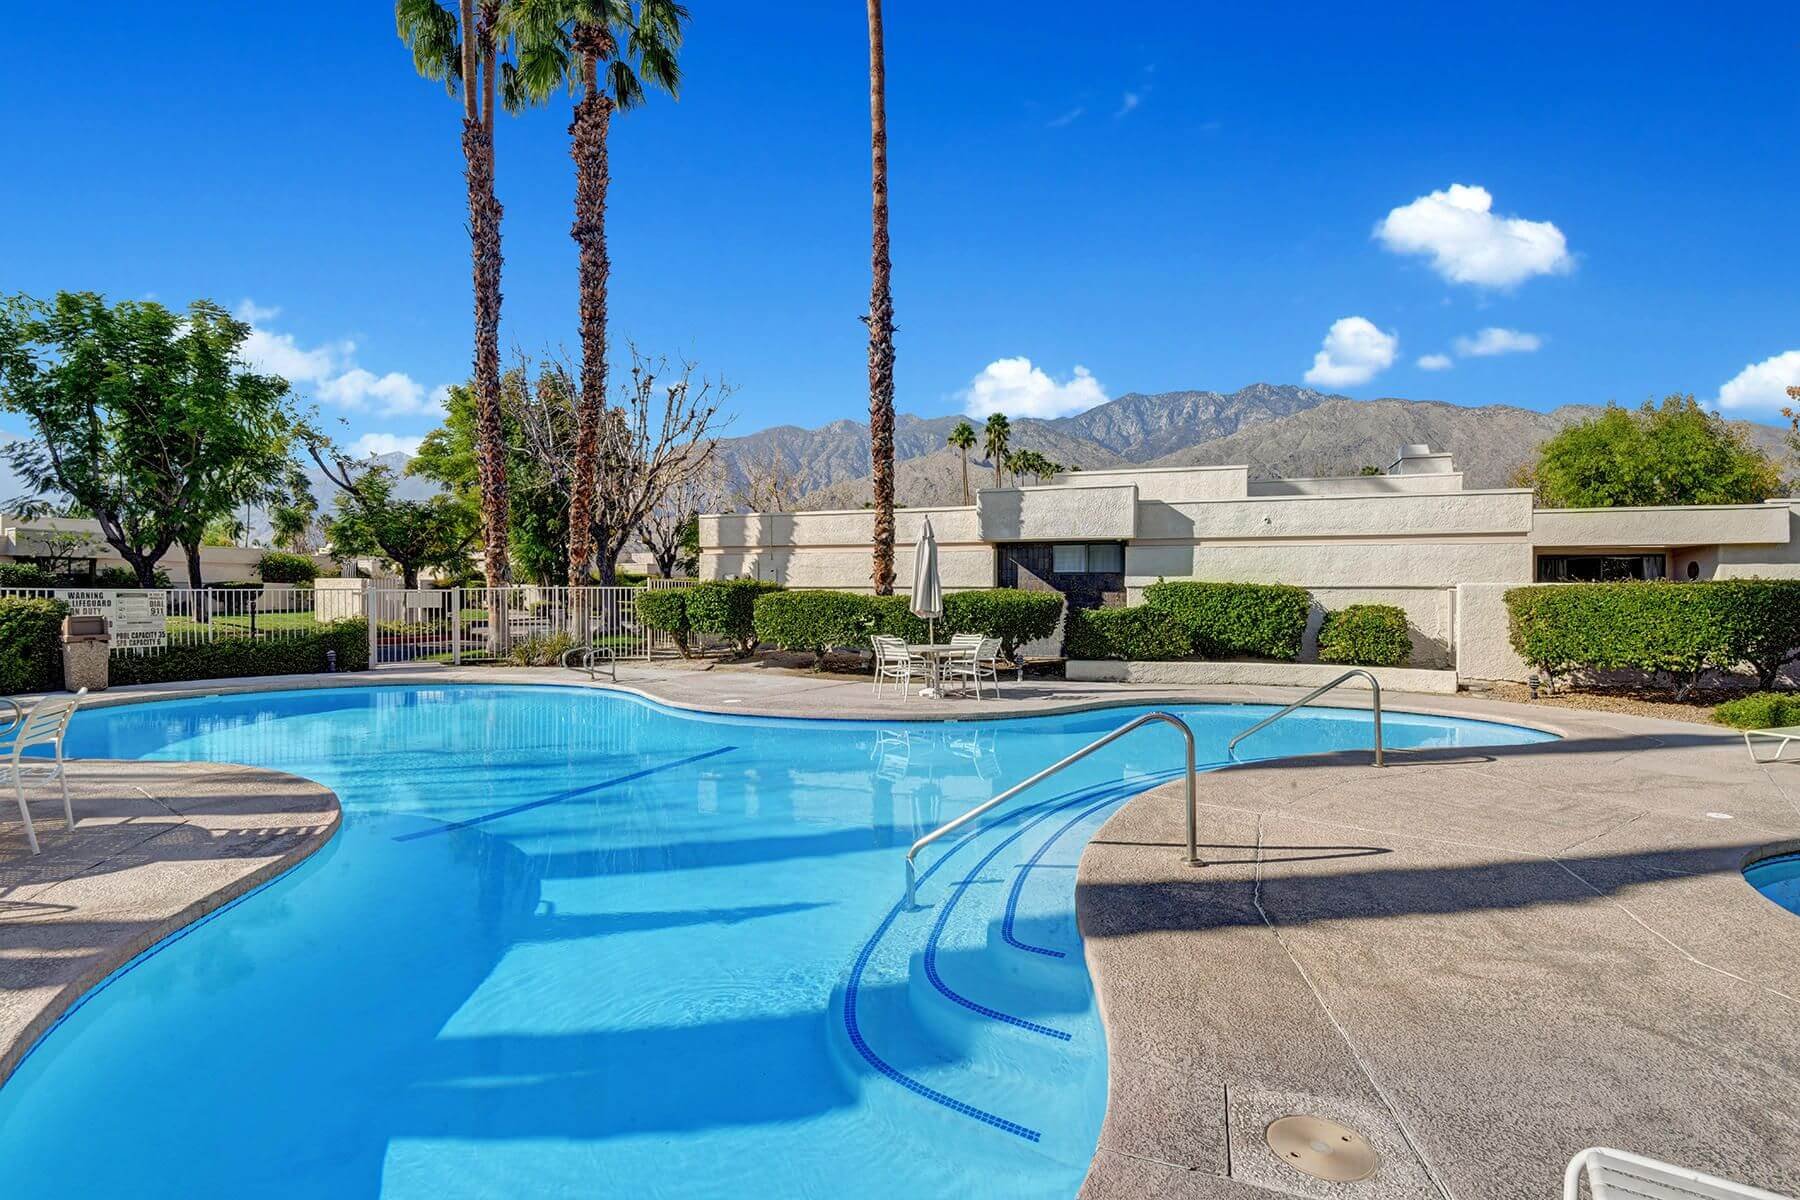 Versailles Palm Springs Community Pool